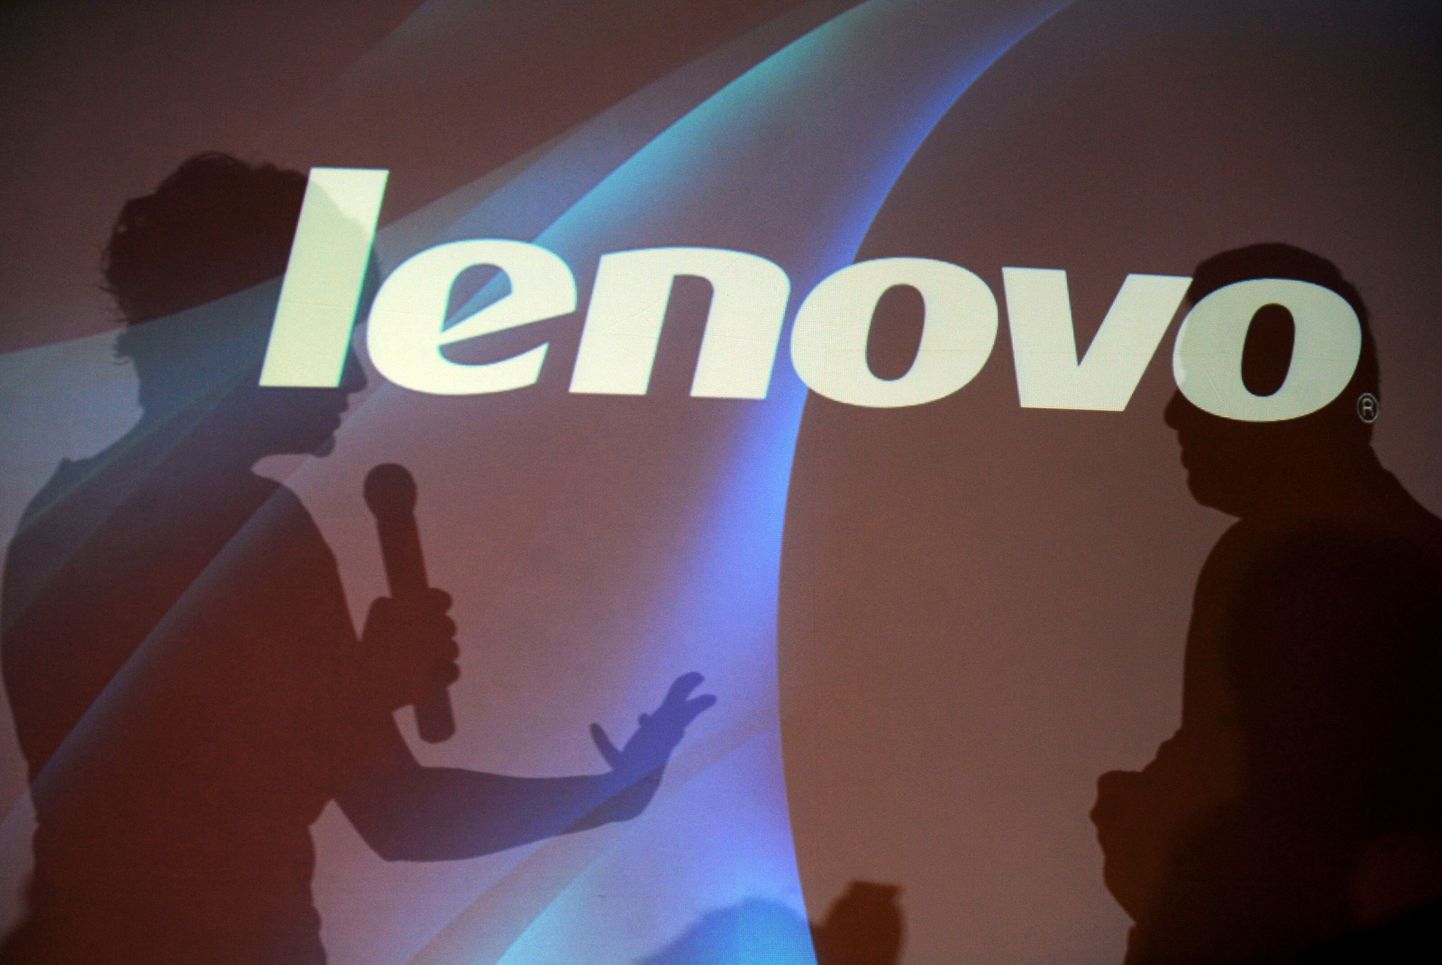 Lenovo logo.